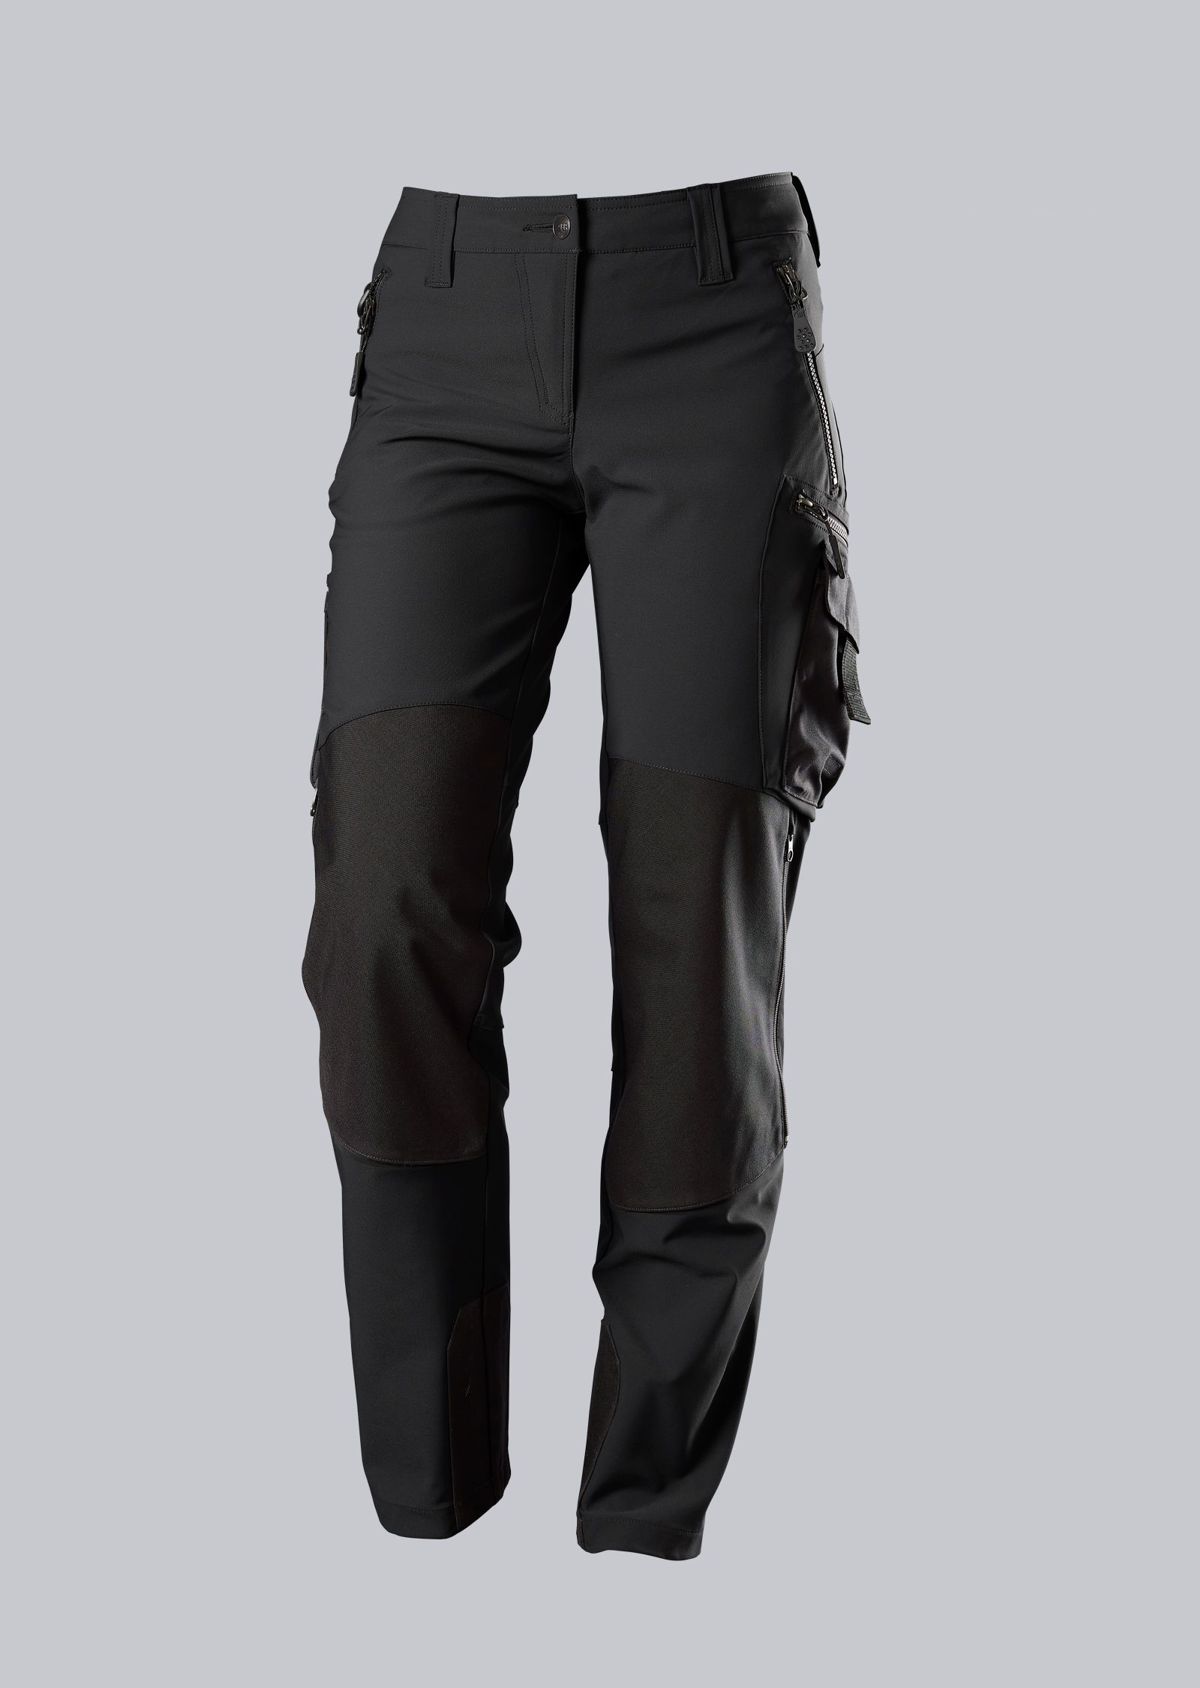 BP® Pantalon de travail super stretch femme avec genouillères